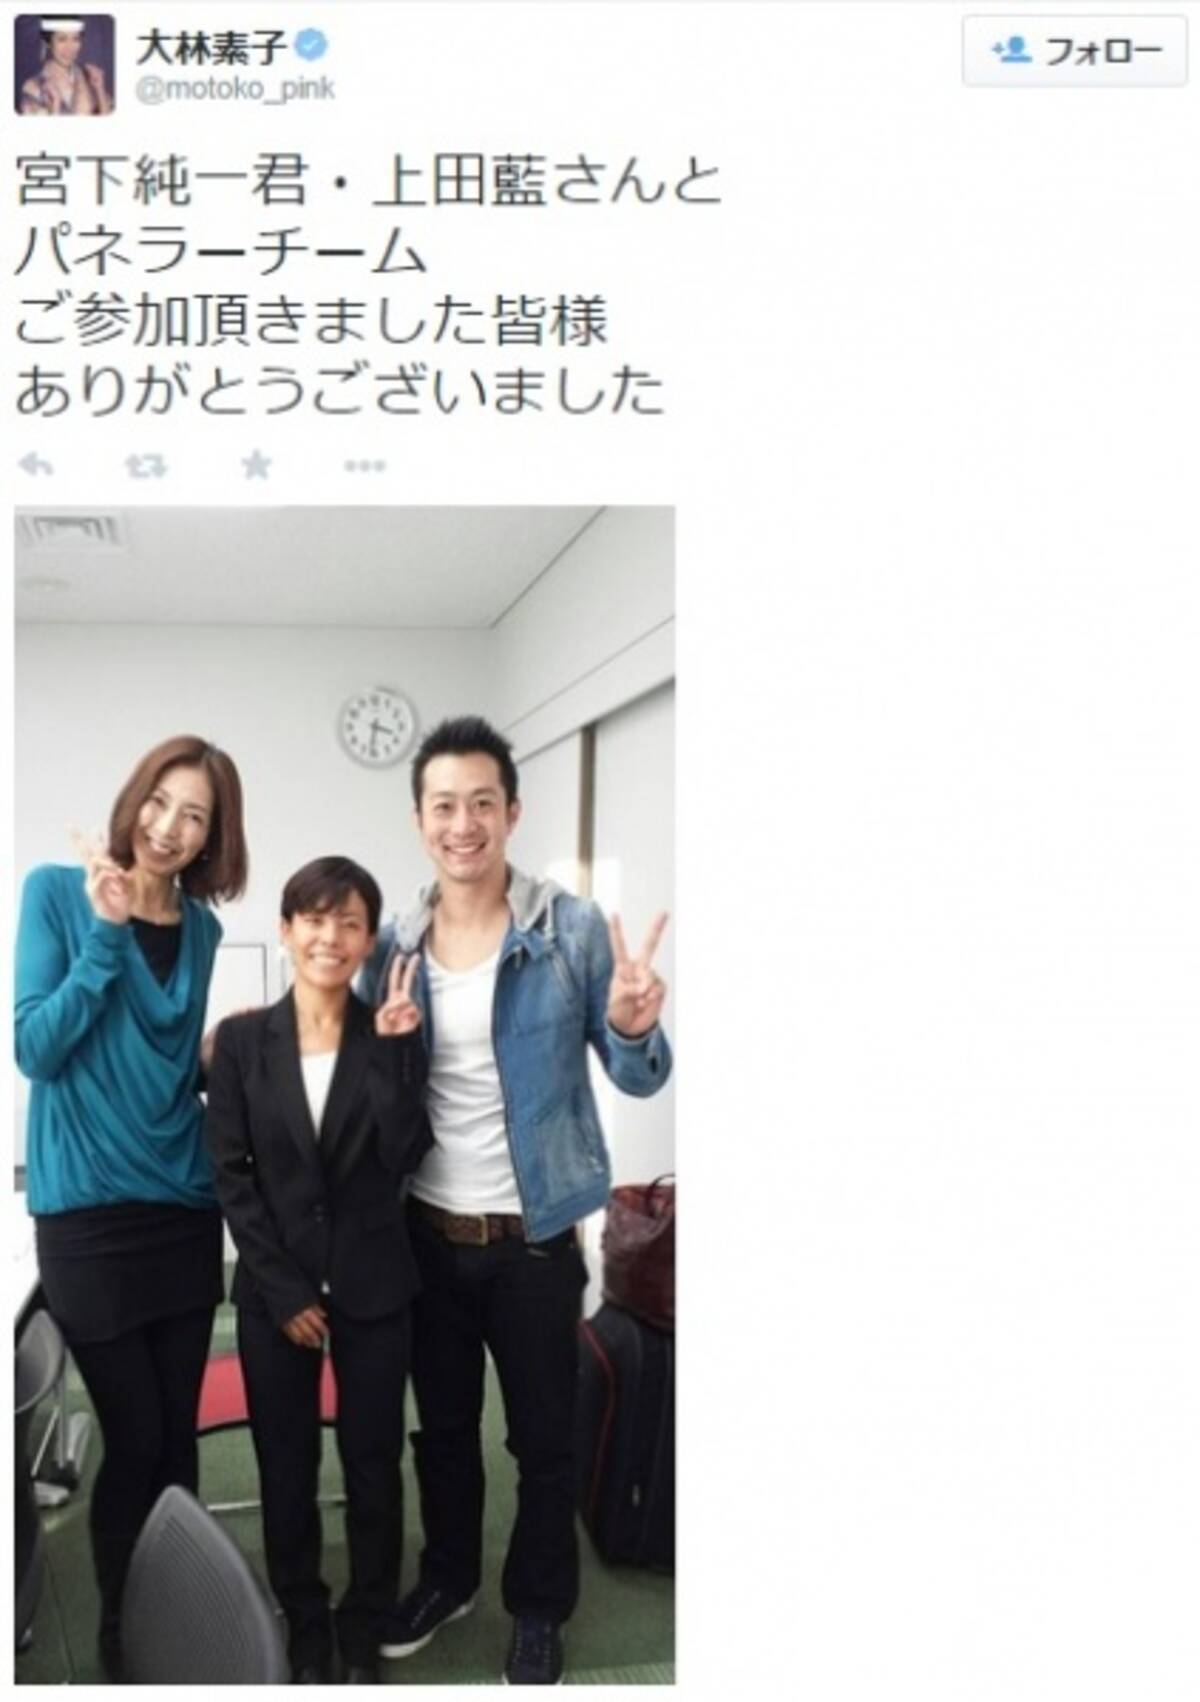 大林素子が舞台女優へと飛躍できたワケ 夢は大河ドラマにミュージカル 東京五輪の実況 14年11月14日 エキサイトニュース